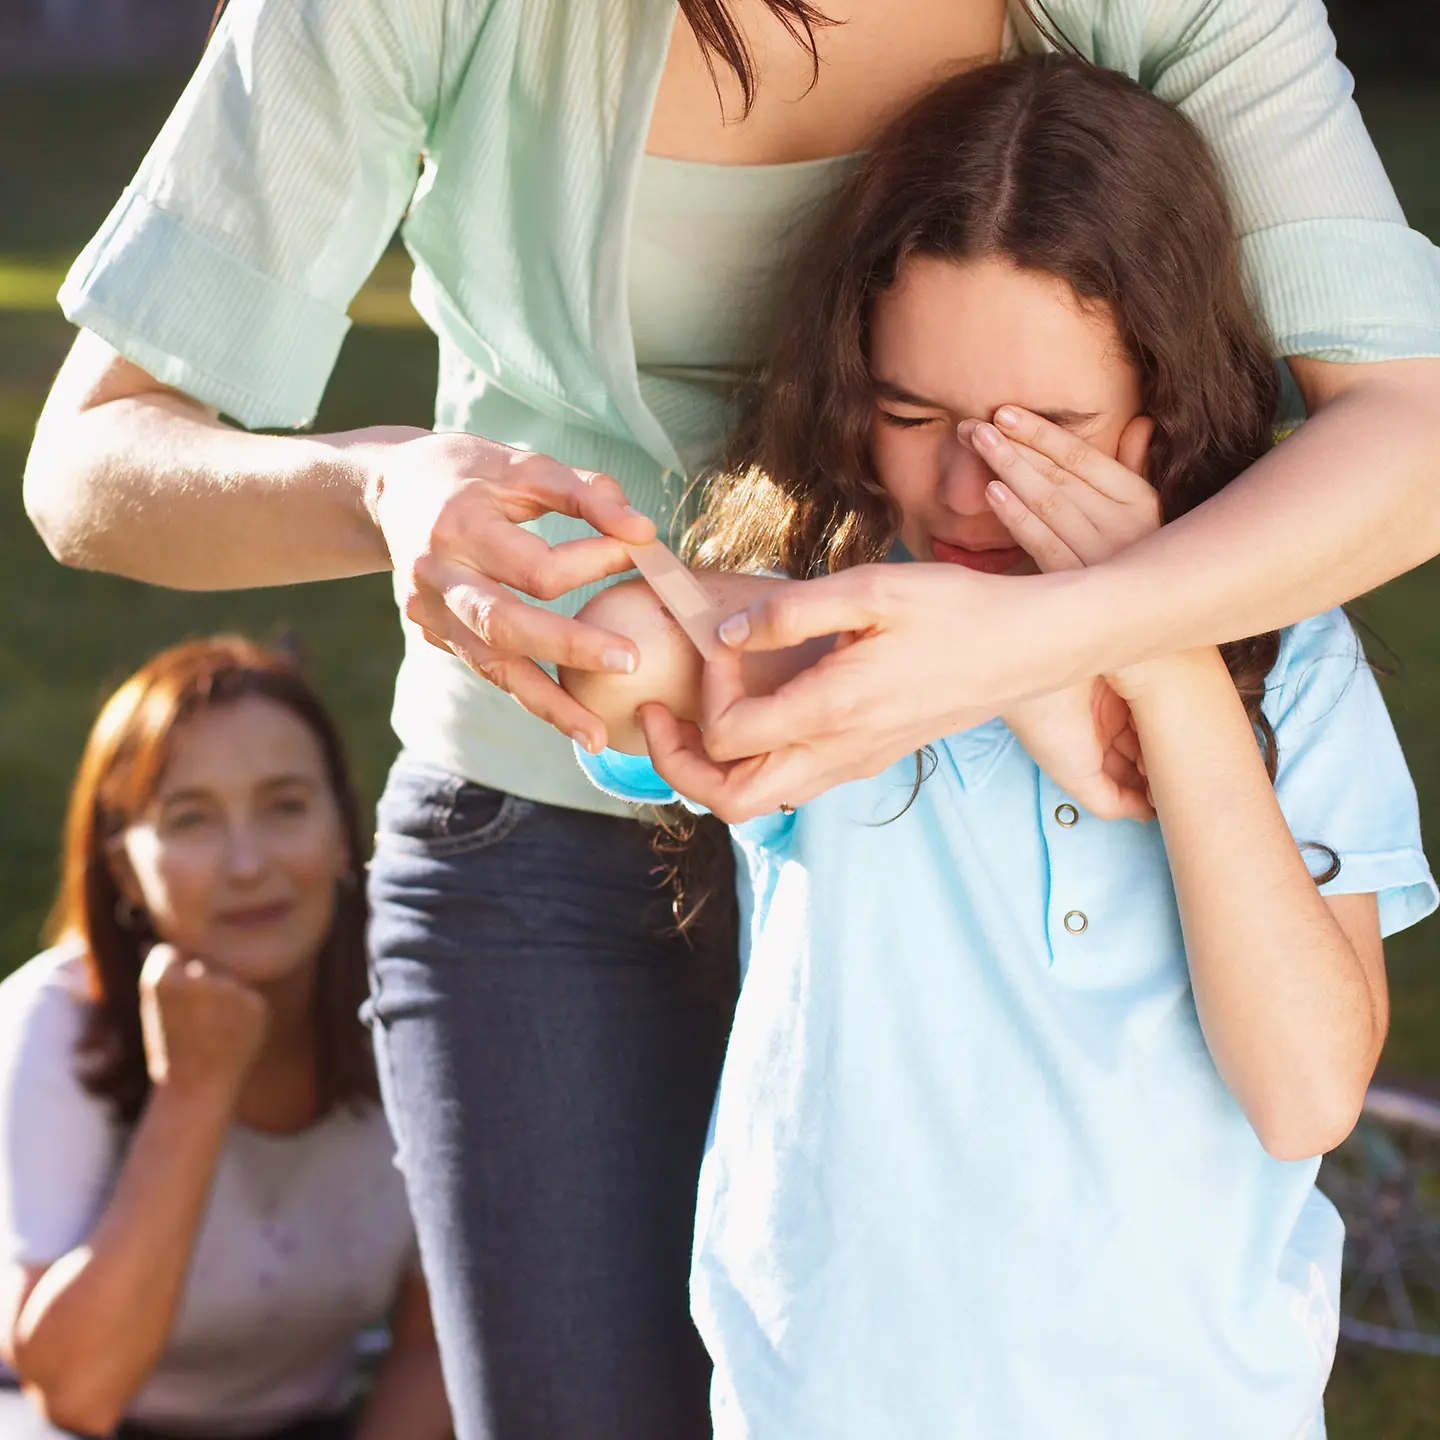 Ein weinendes Mädchen bekommt ein Pflaster auf den Ellenbogen geklebt